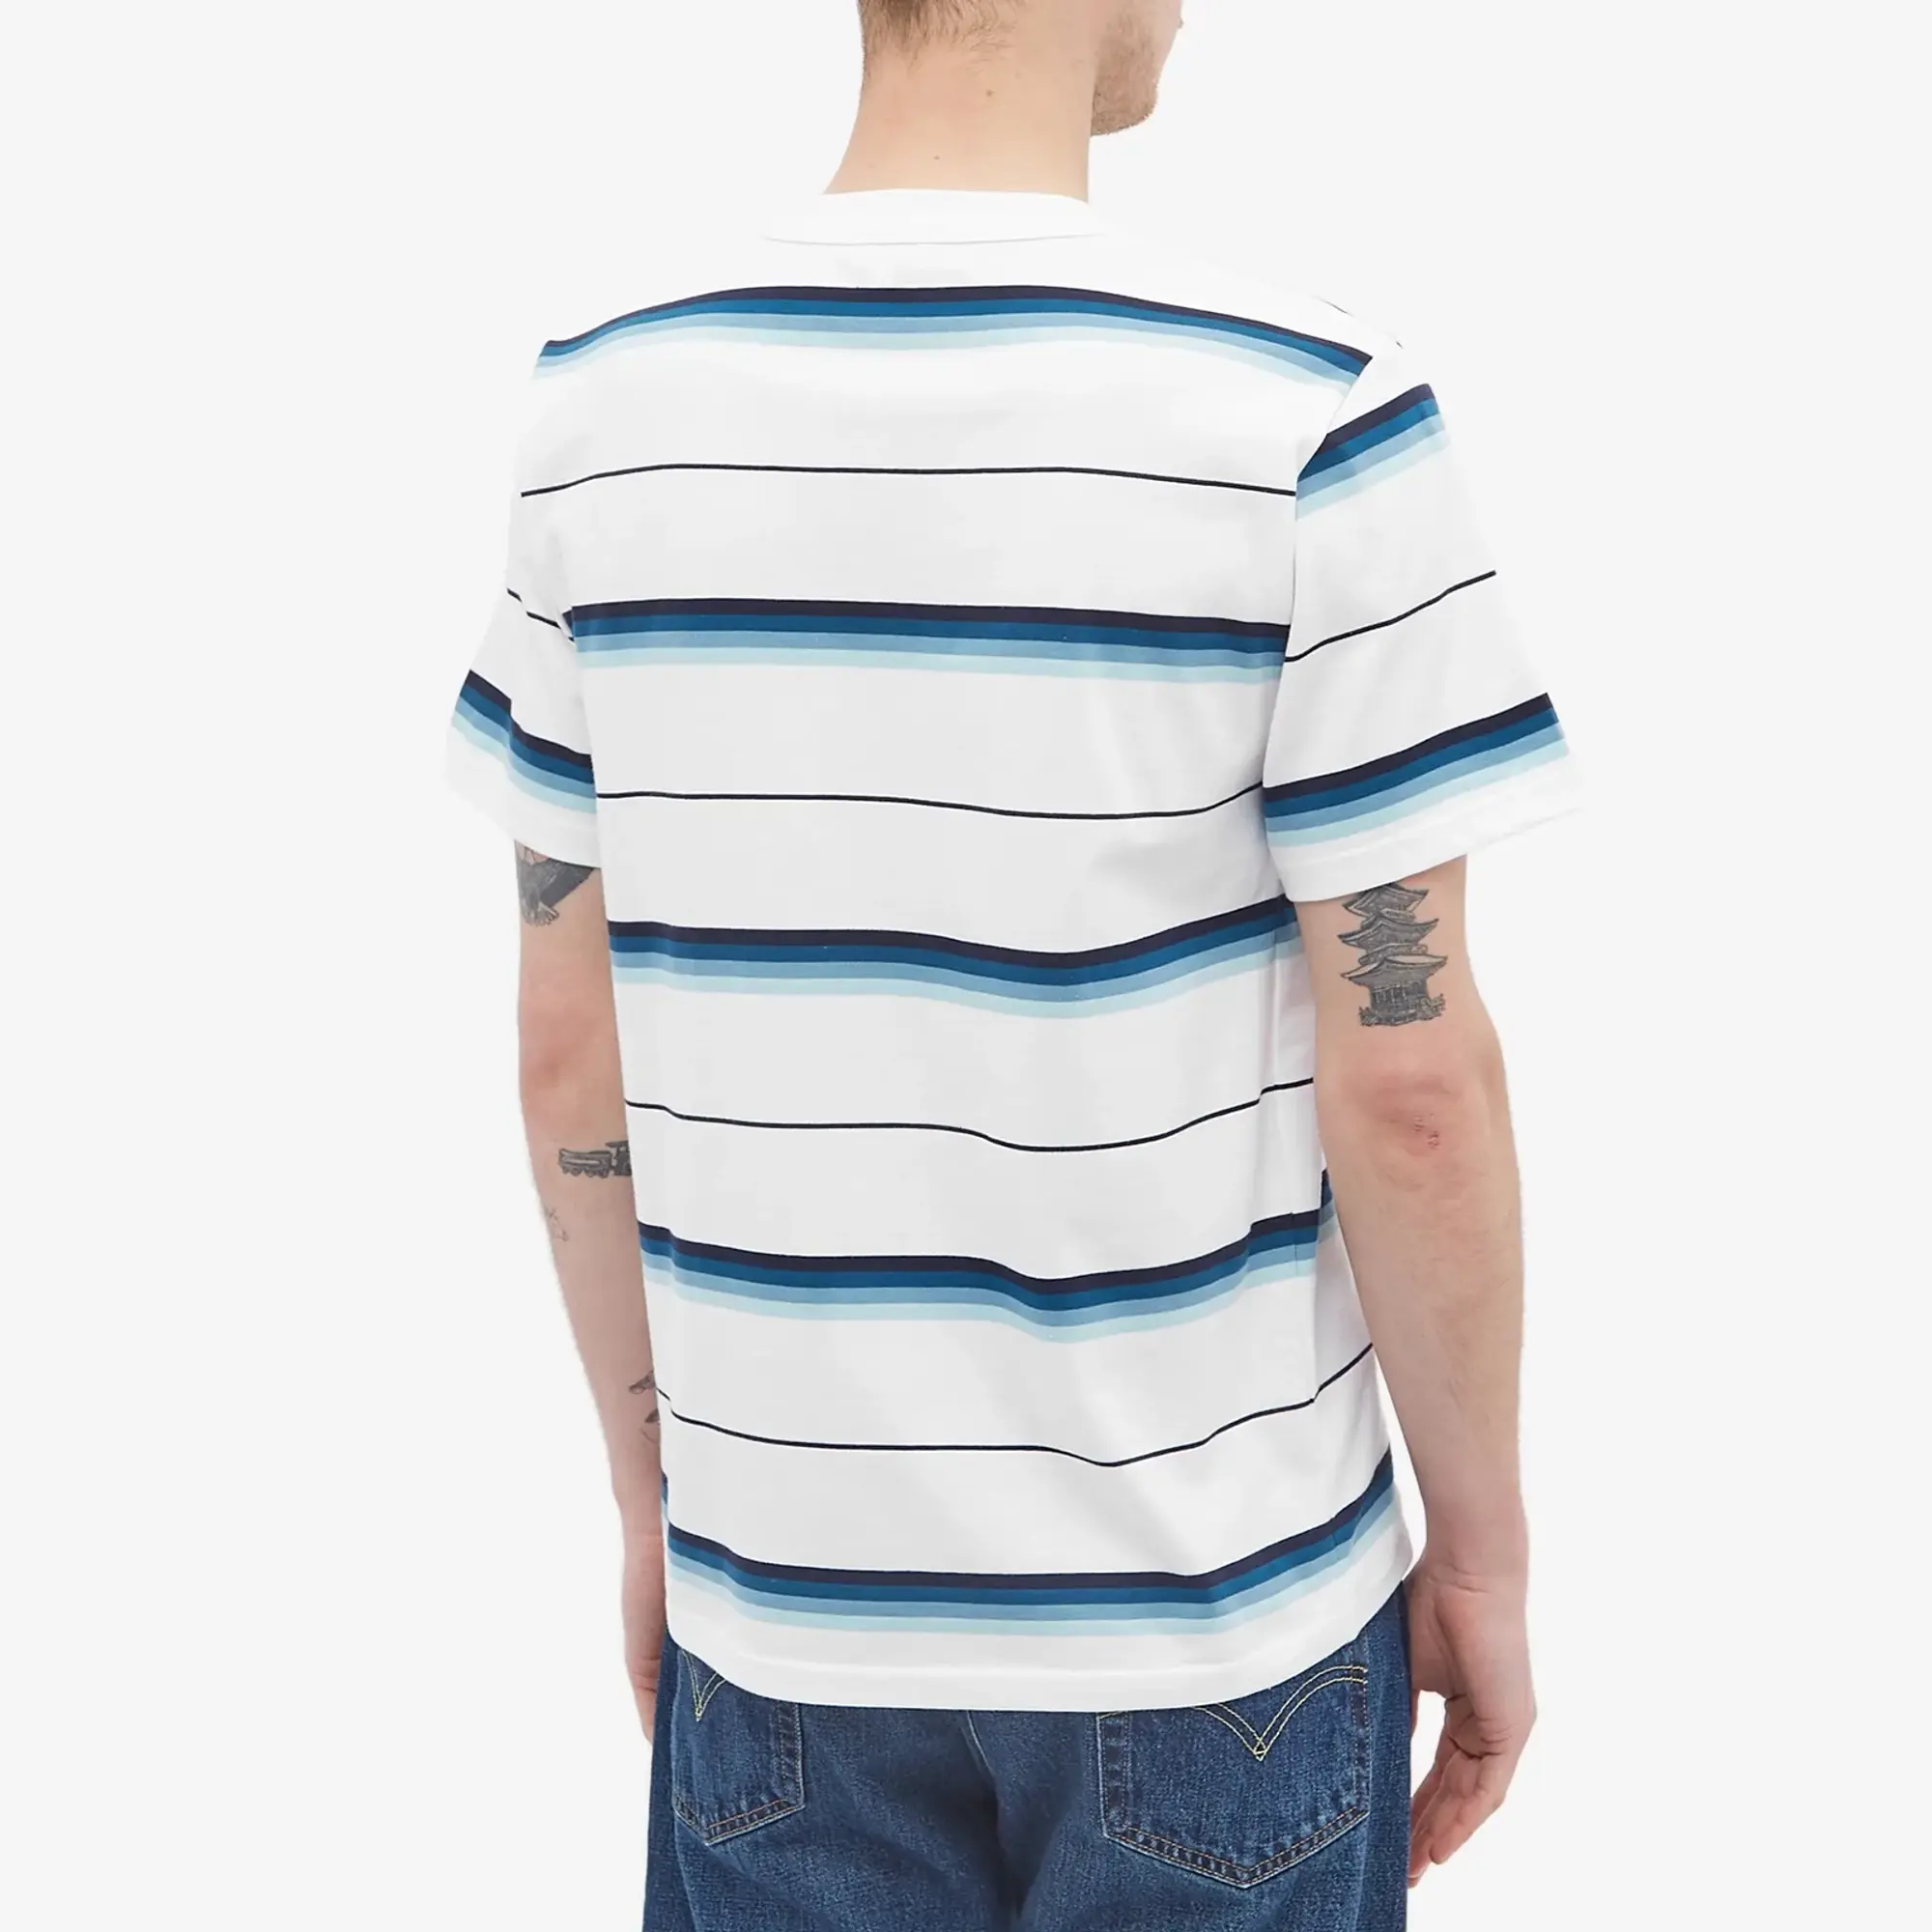 Armor-Lux Men's Stripe T-Shirt White/Blue/Navy